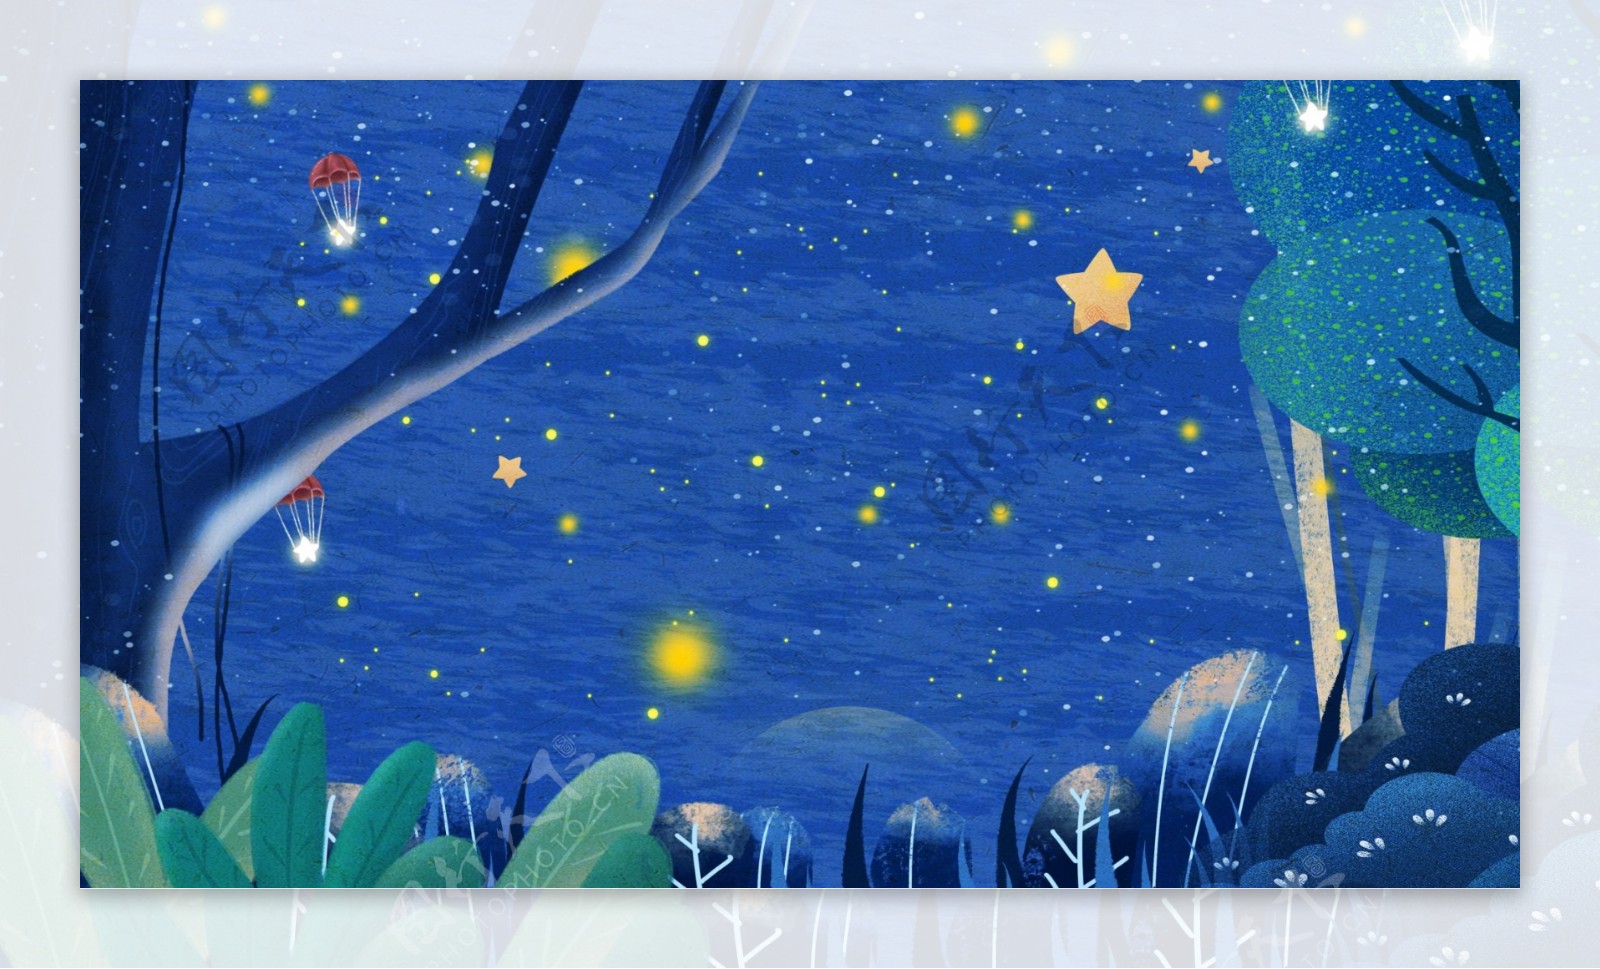 蓝色浪漫星空树林背景设计